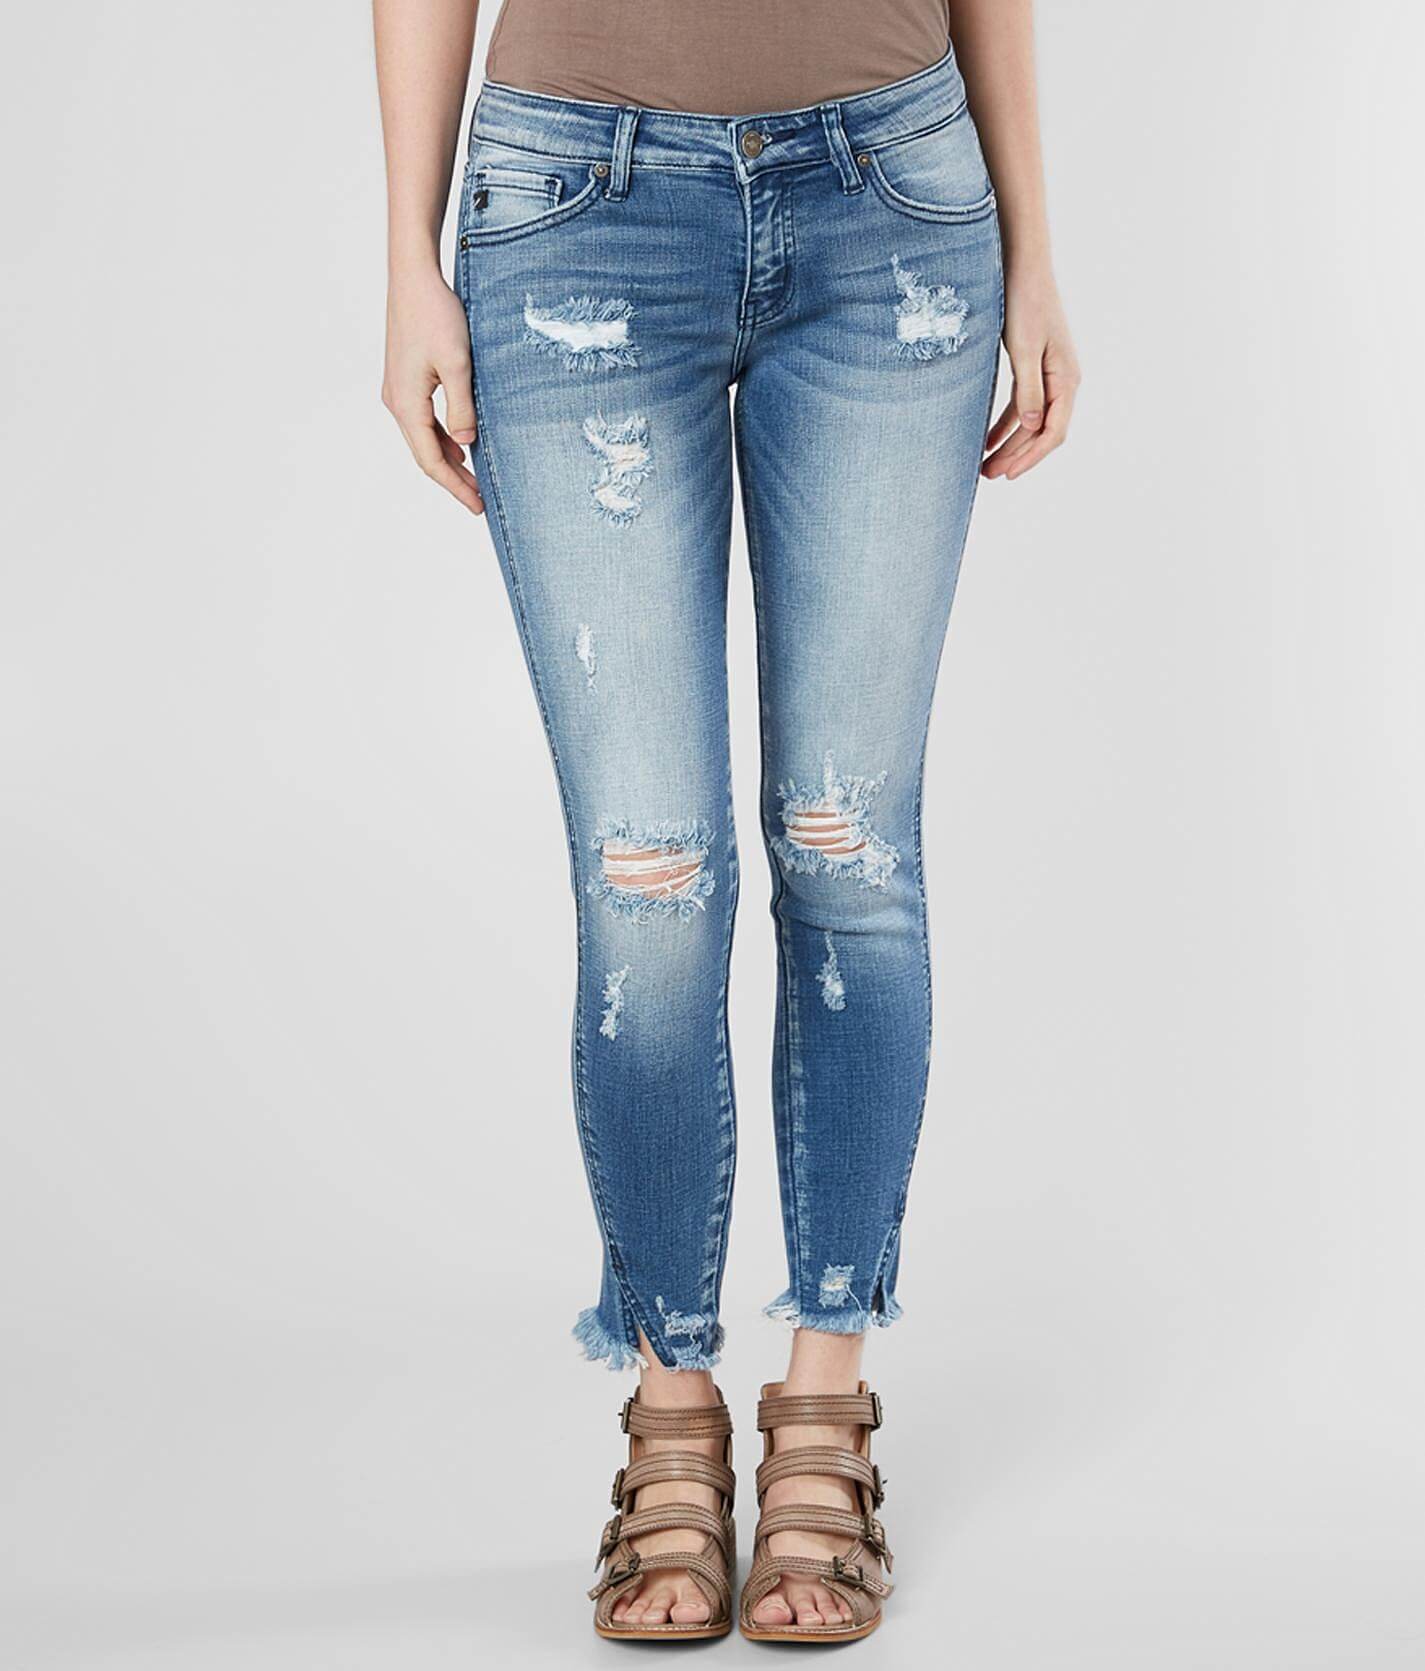 levi blue jeans 505